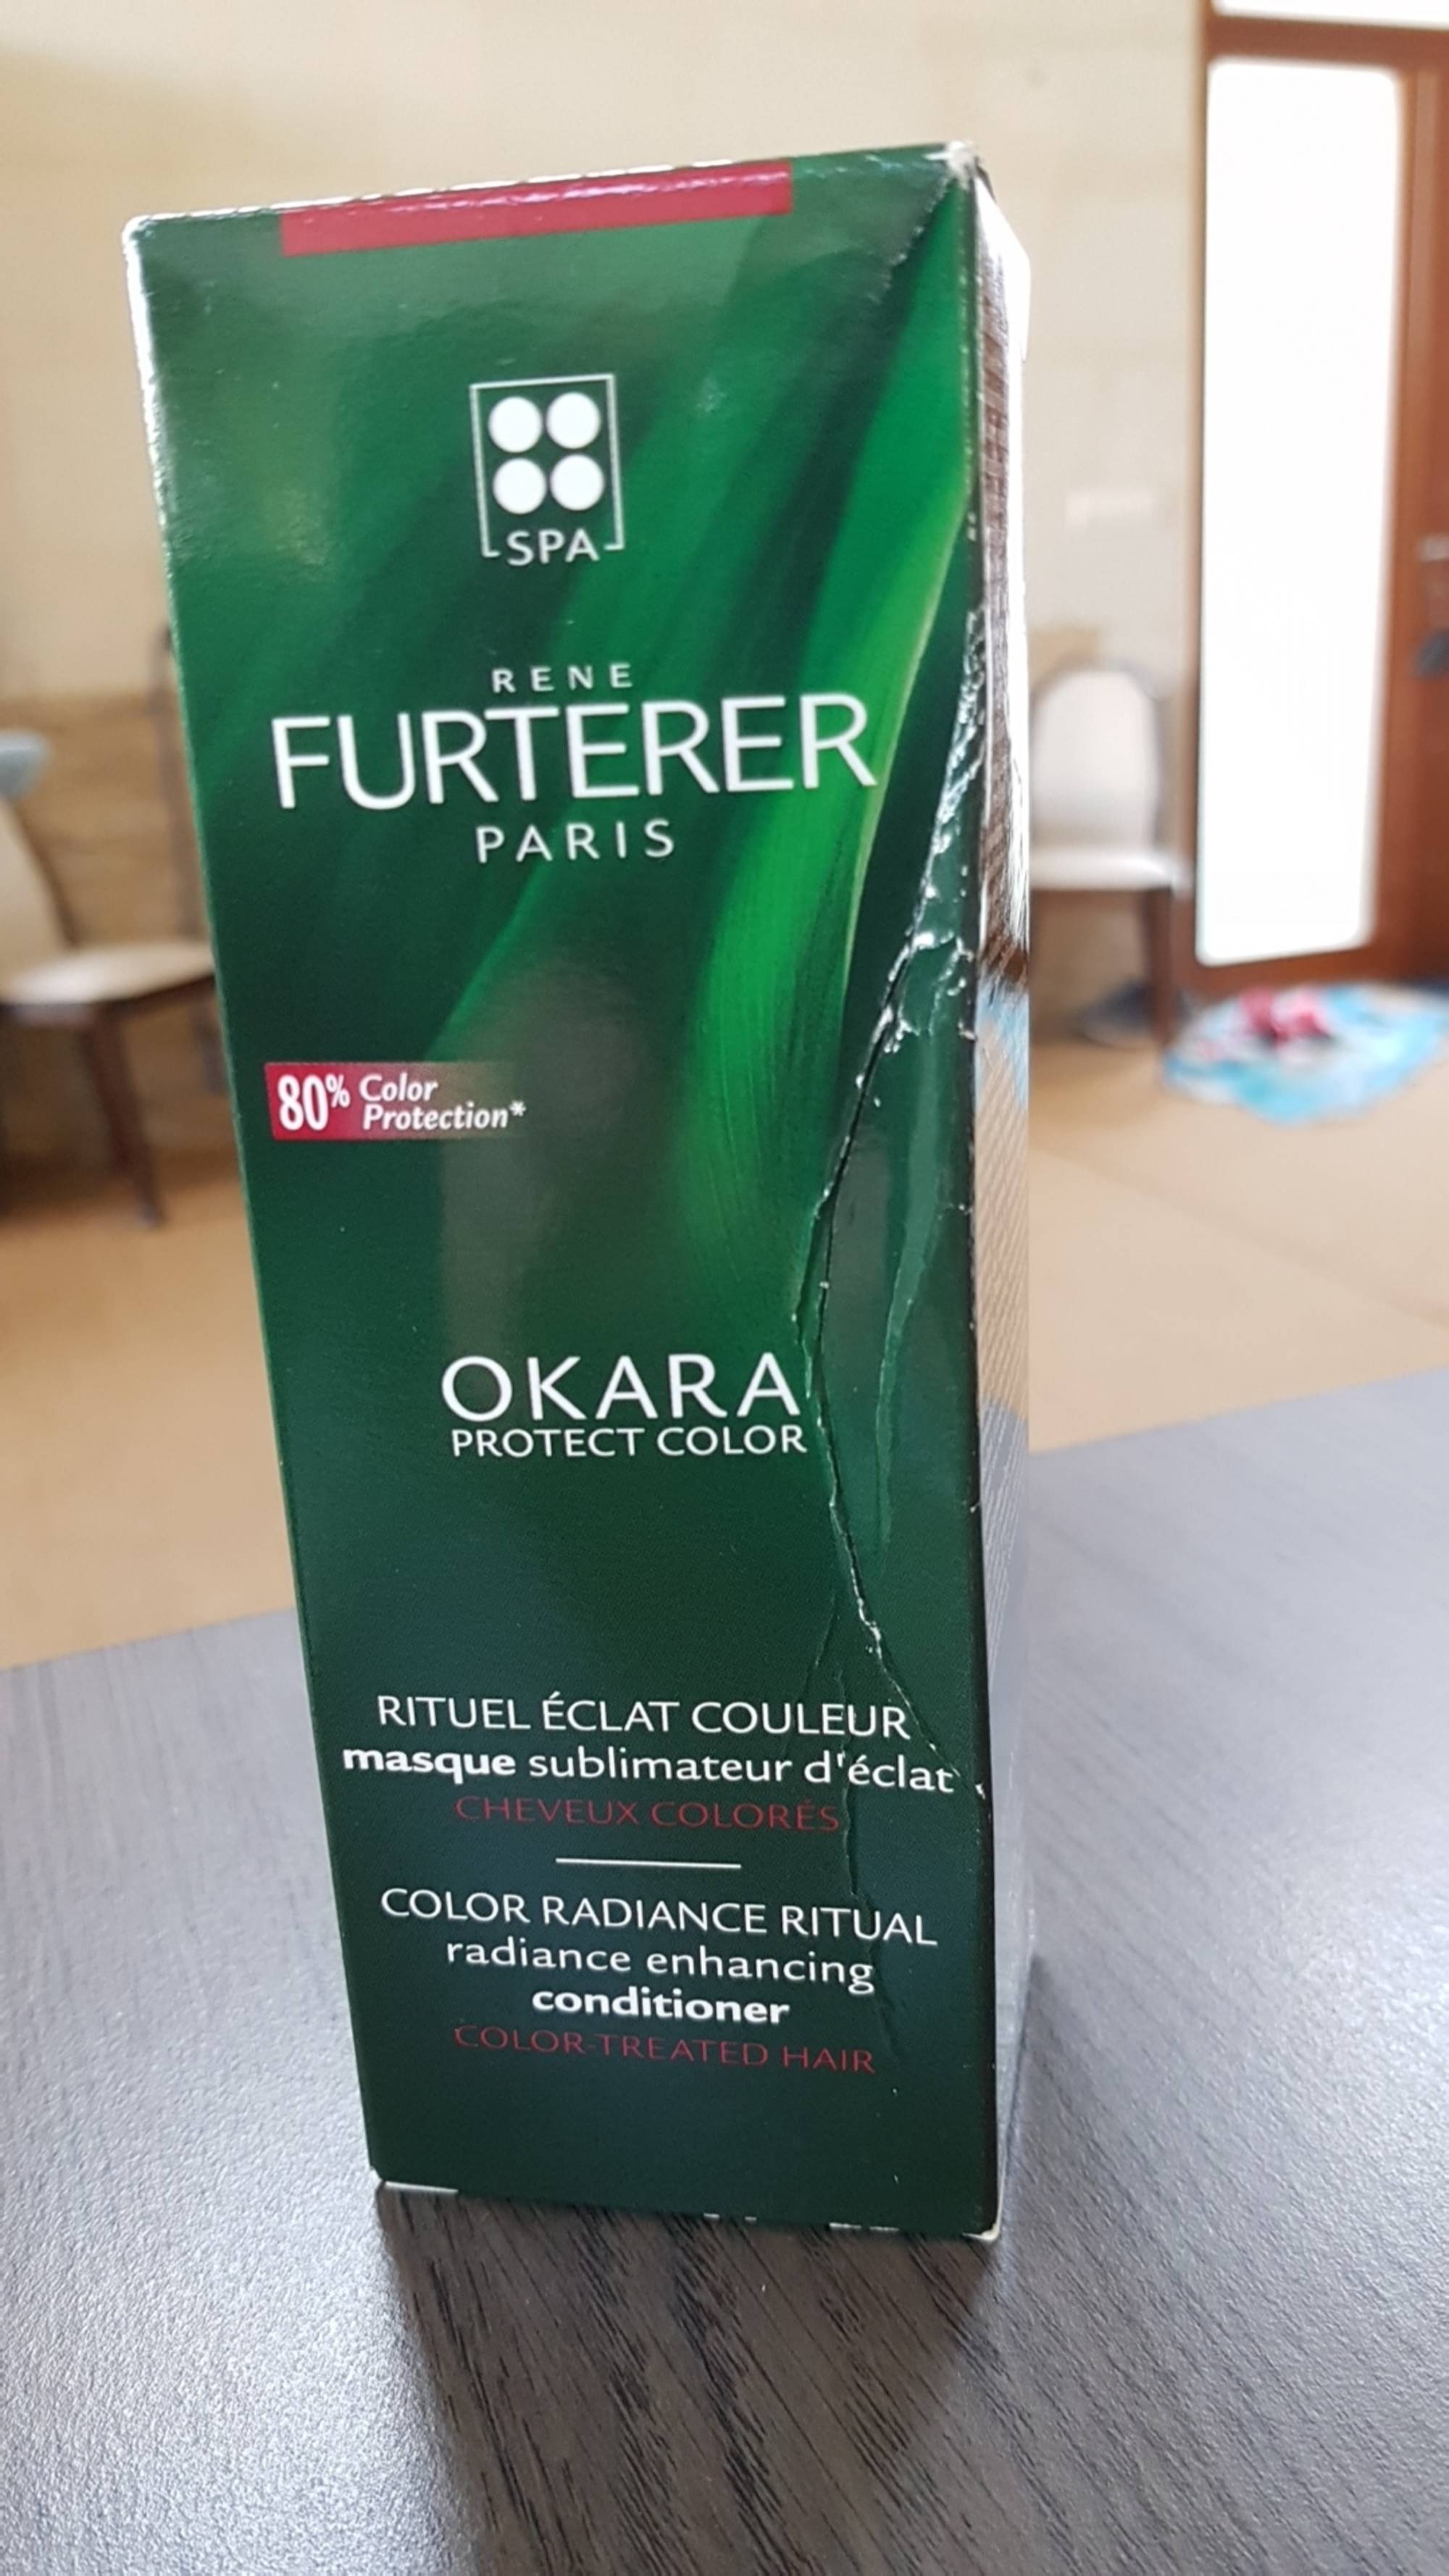 RENÉ FURTERER - Okara protect color - Masque sublimateur d'éclat